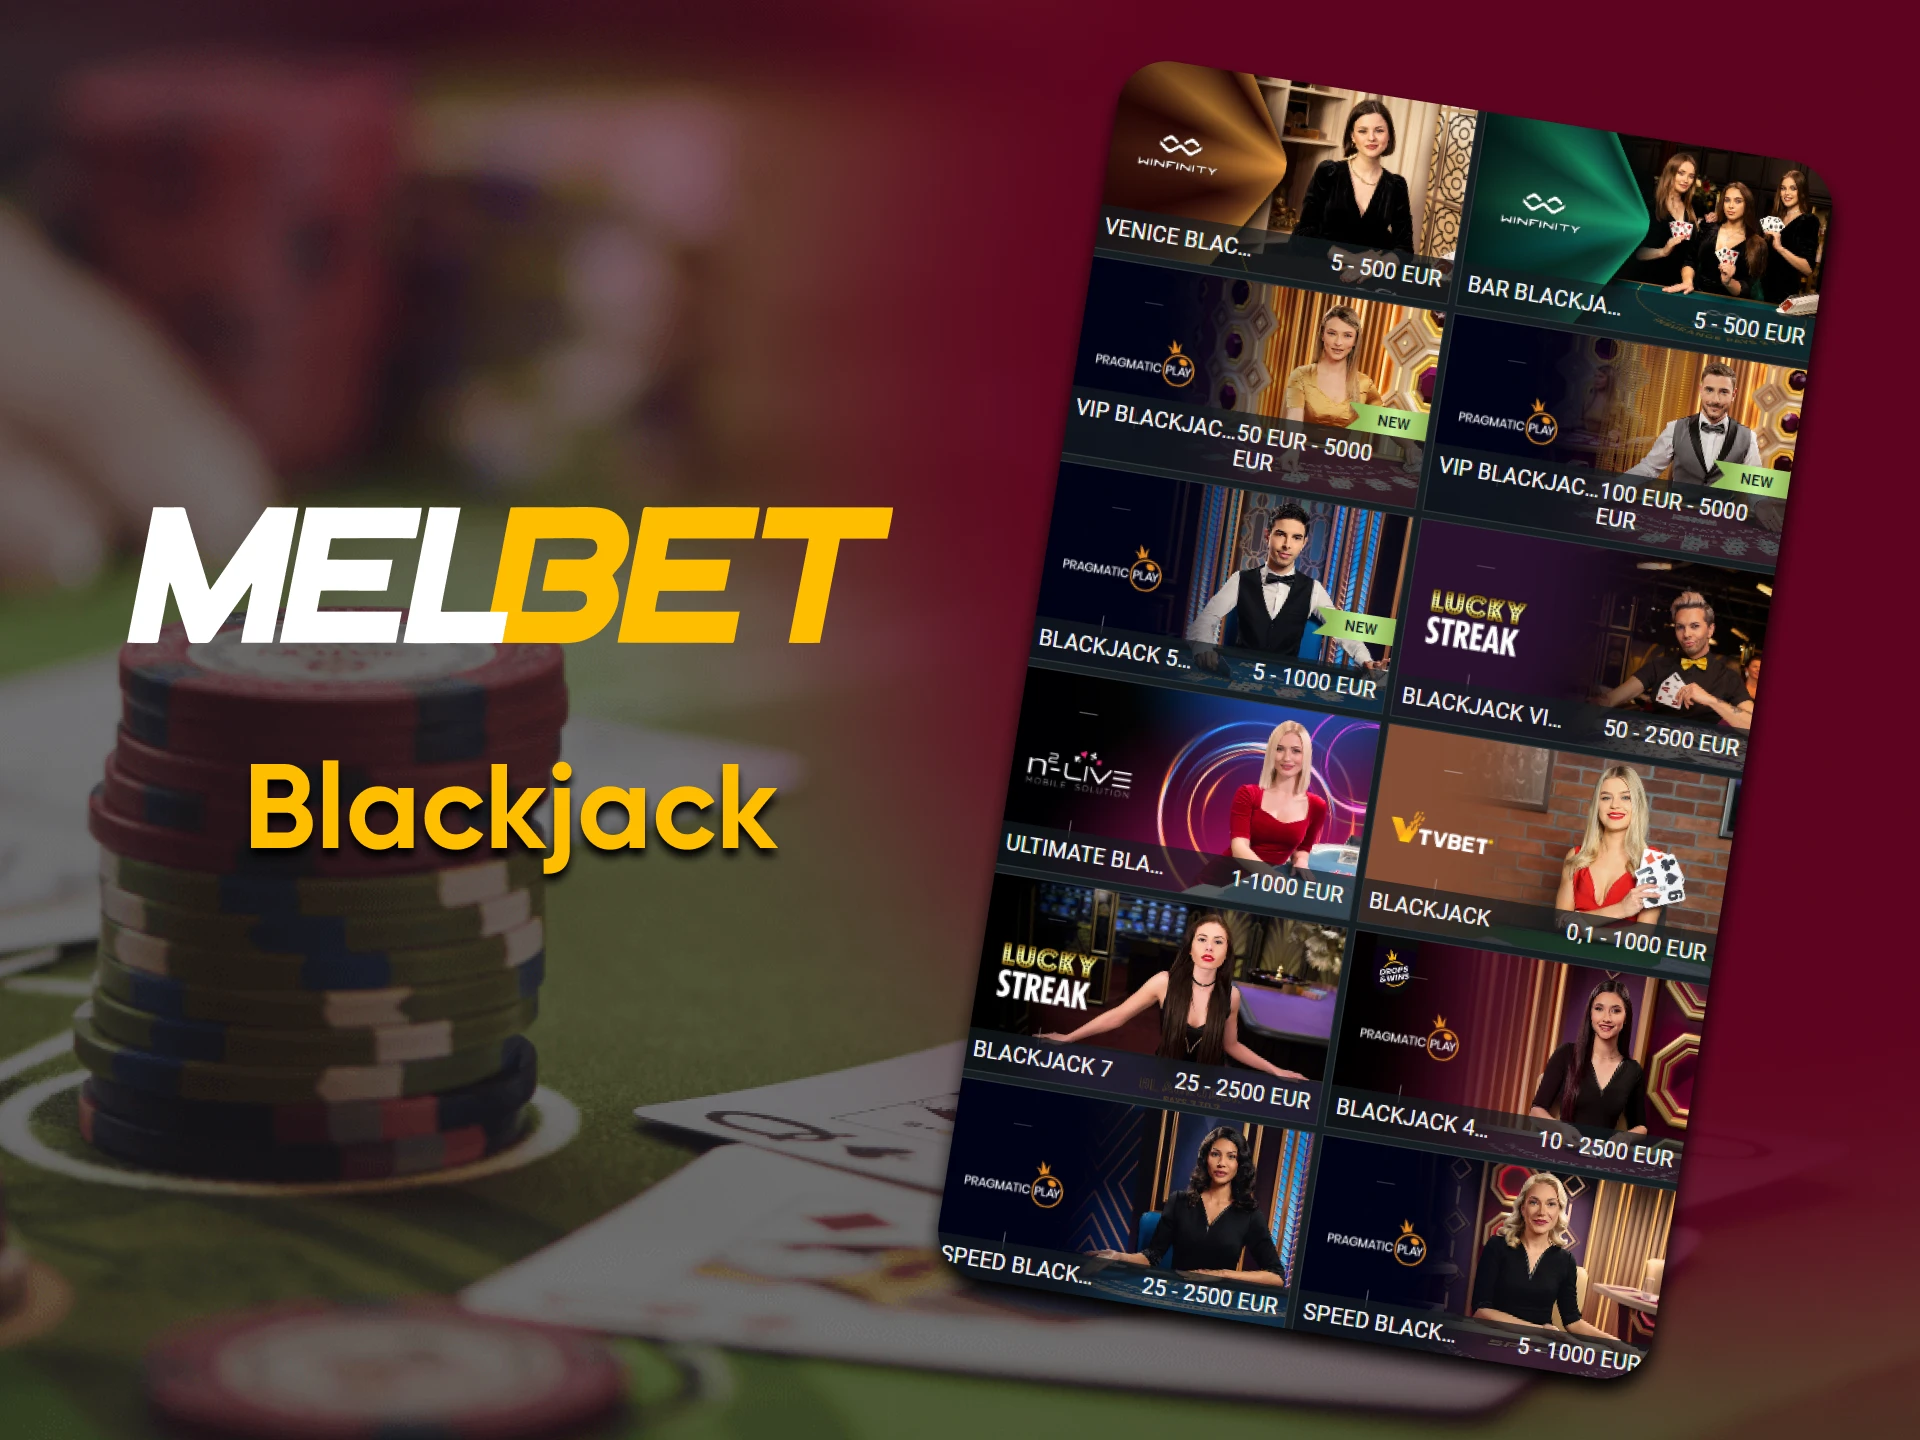 Para jogos de cassino ao vivo na Melbet, escolha Blackjack.